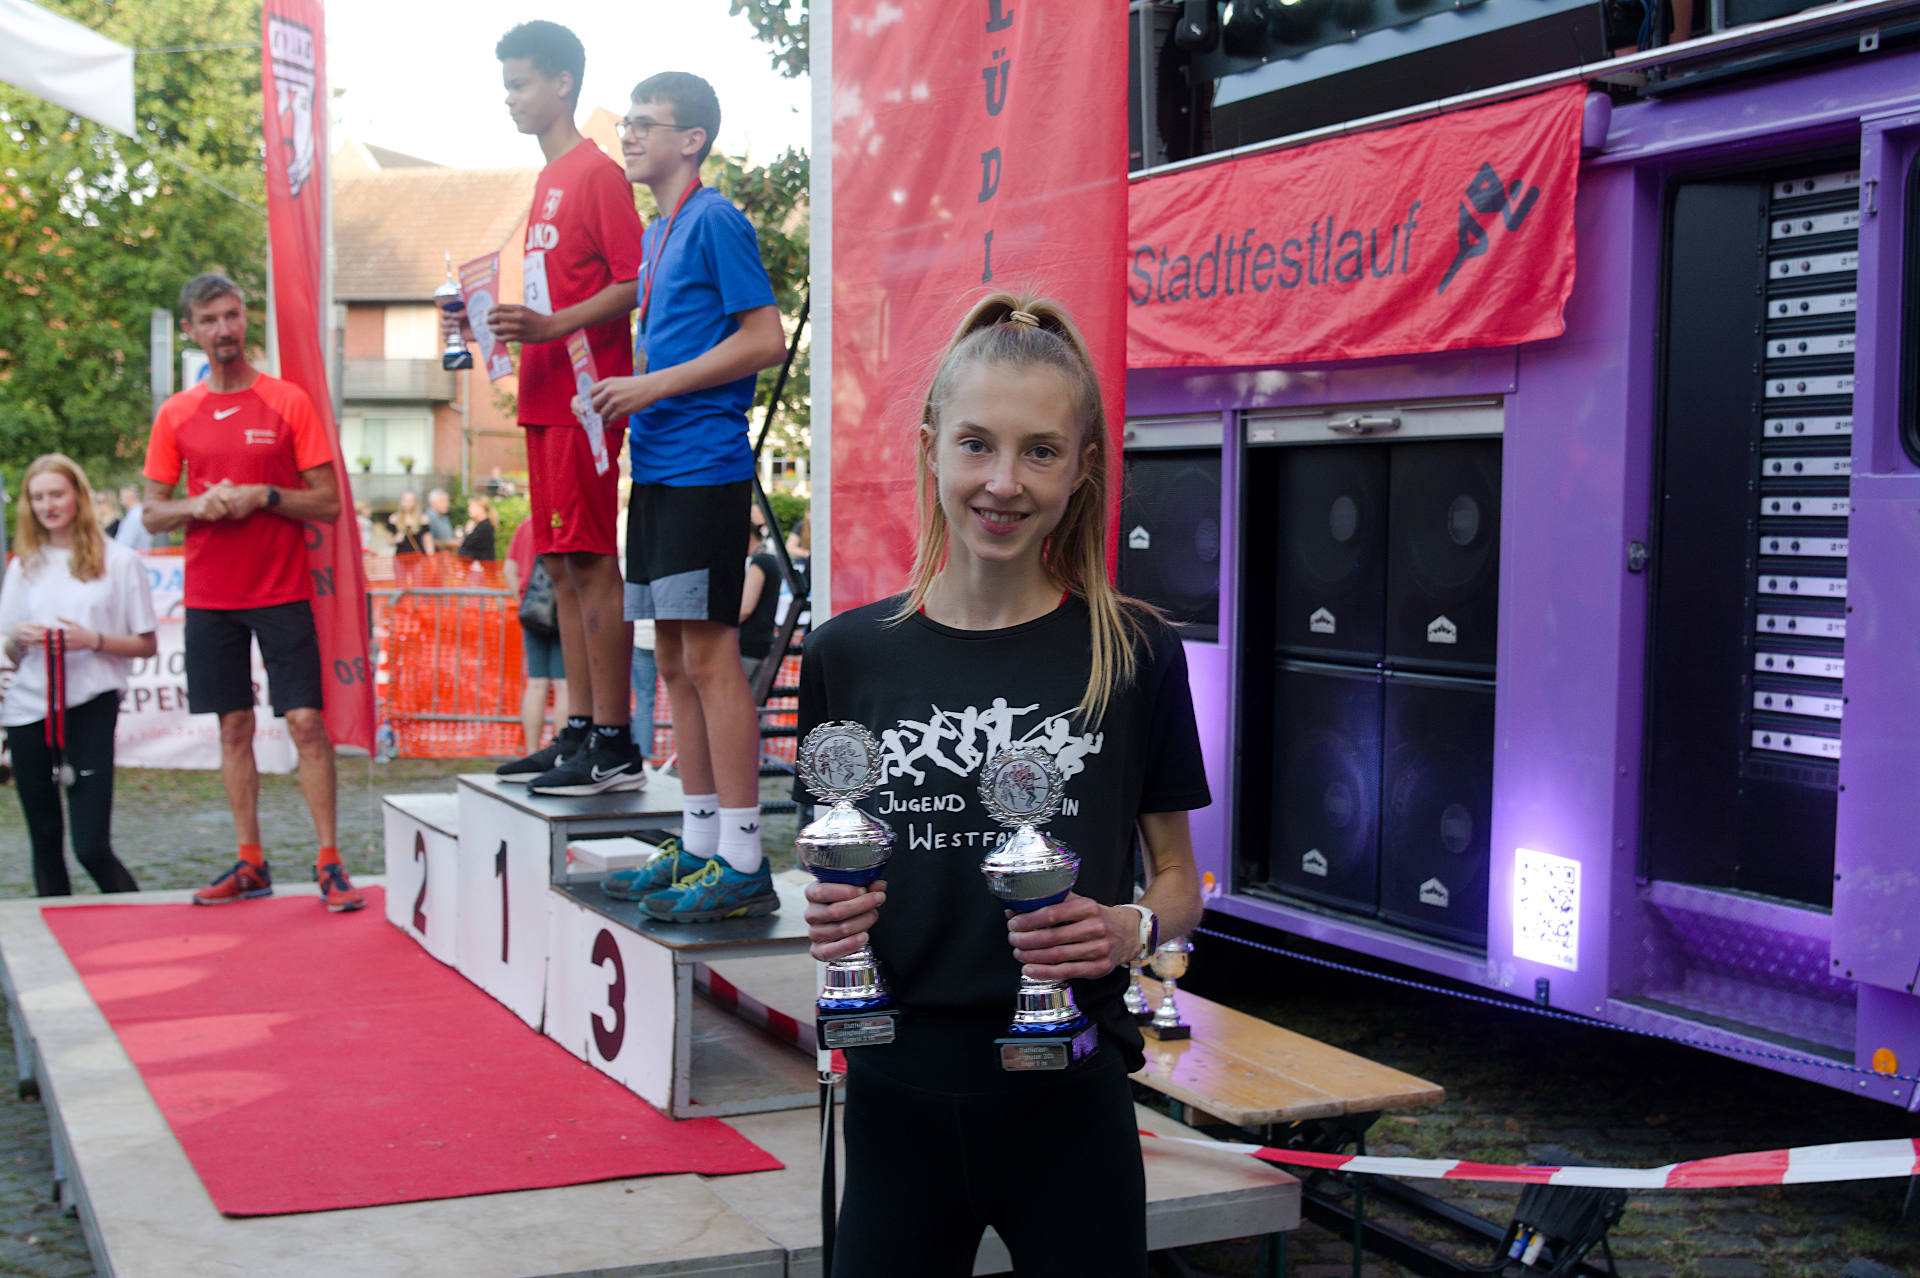 Gleich zwei Pokale gab es für Lisa Kerkhoff beim Stadtfestlauf in Lüdinghausen